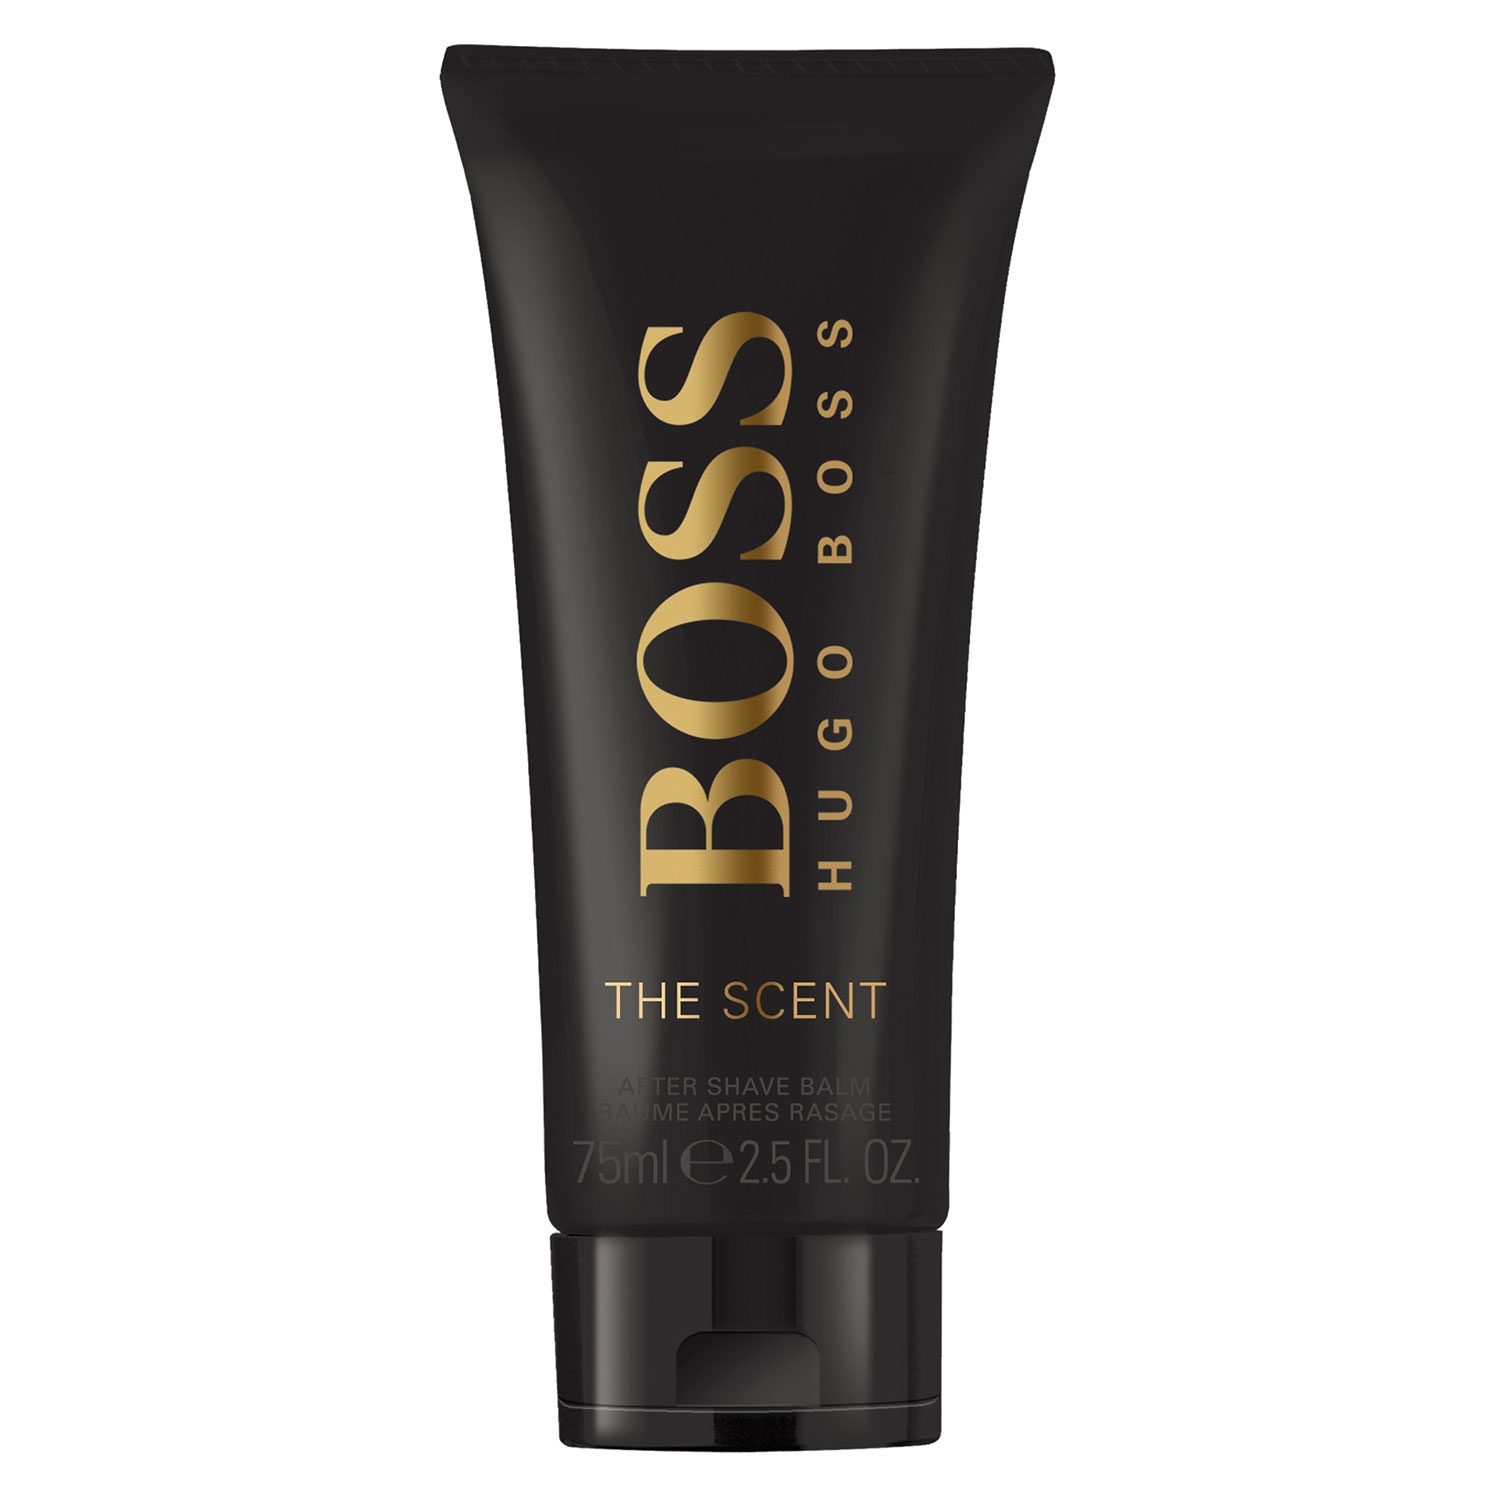 Produktbild von Boss The Scent - After Shave Balm